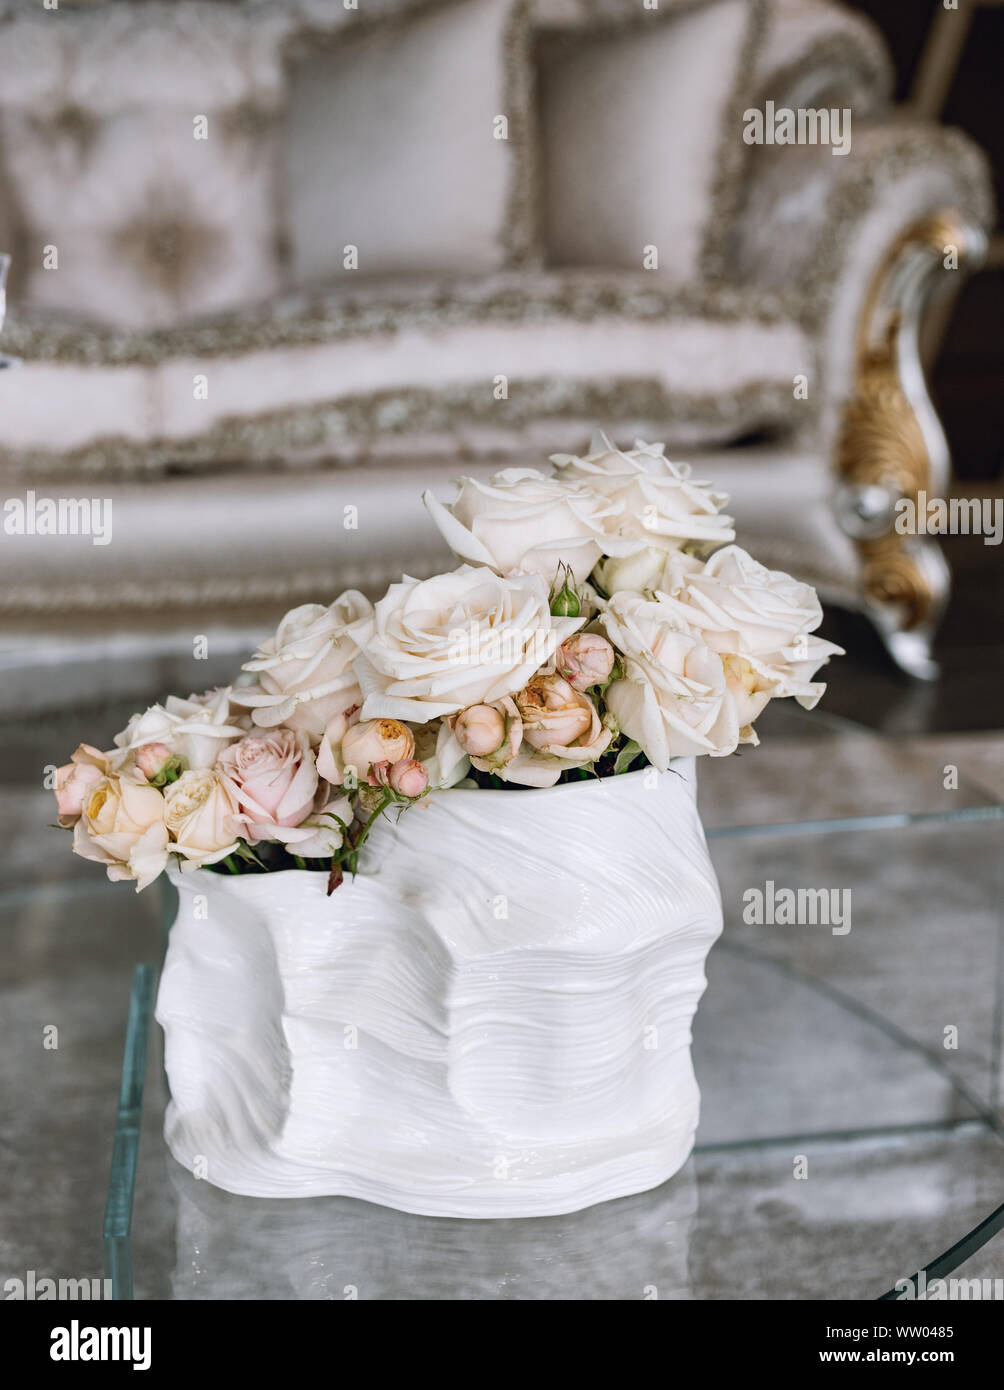 Blumenstrauß aus zarten rosa Rosen in einer Schale auf dem Tisch. Nachttisch, Innenraum eines Fashion House. Rokoko Sofa mit Vase rose. Luxus reiche Leben ro Stockfoto